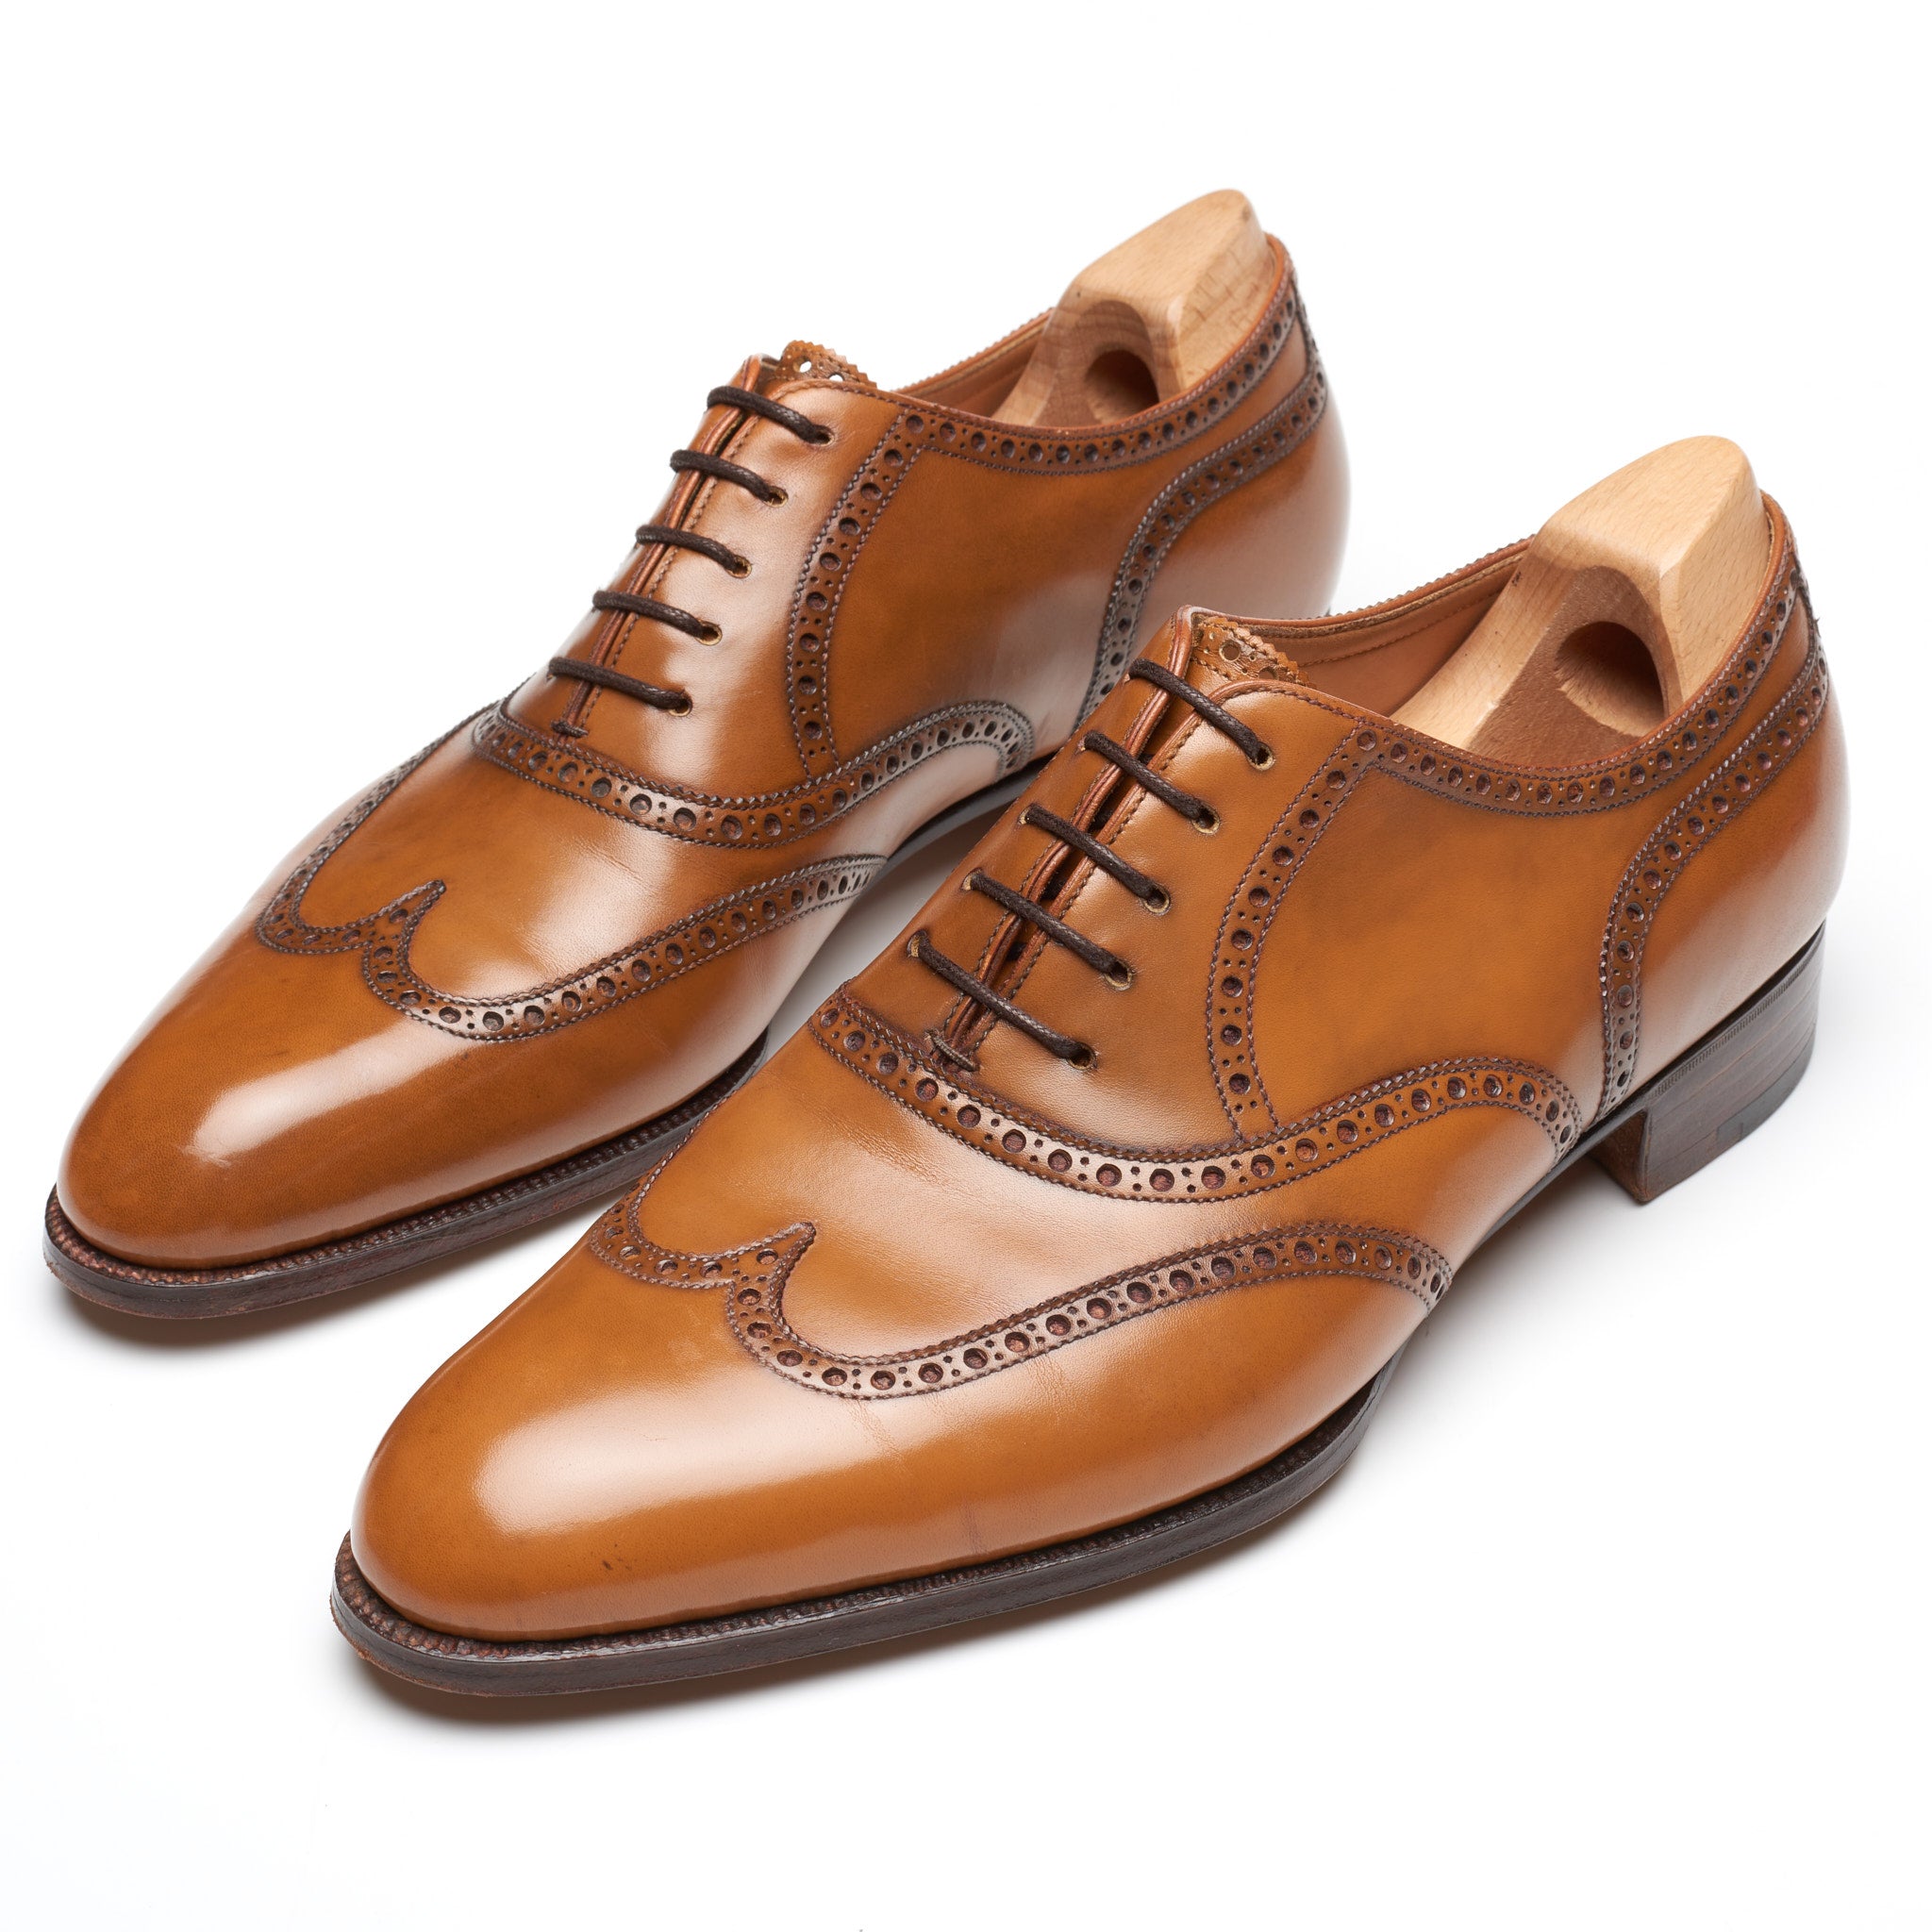 JOHN LOBB Paris Bespoke Cognac Calf Brogue Wingtip Oxford Shoes UK 7.5 US 8.5 JOHN LOBB